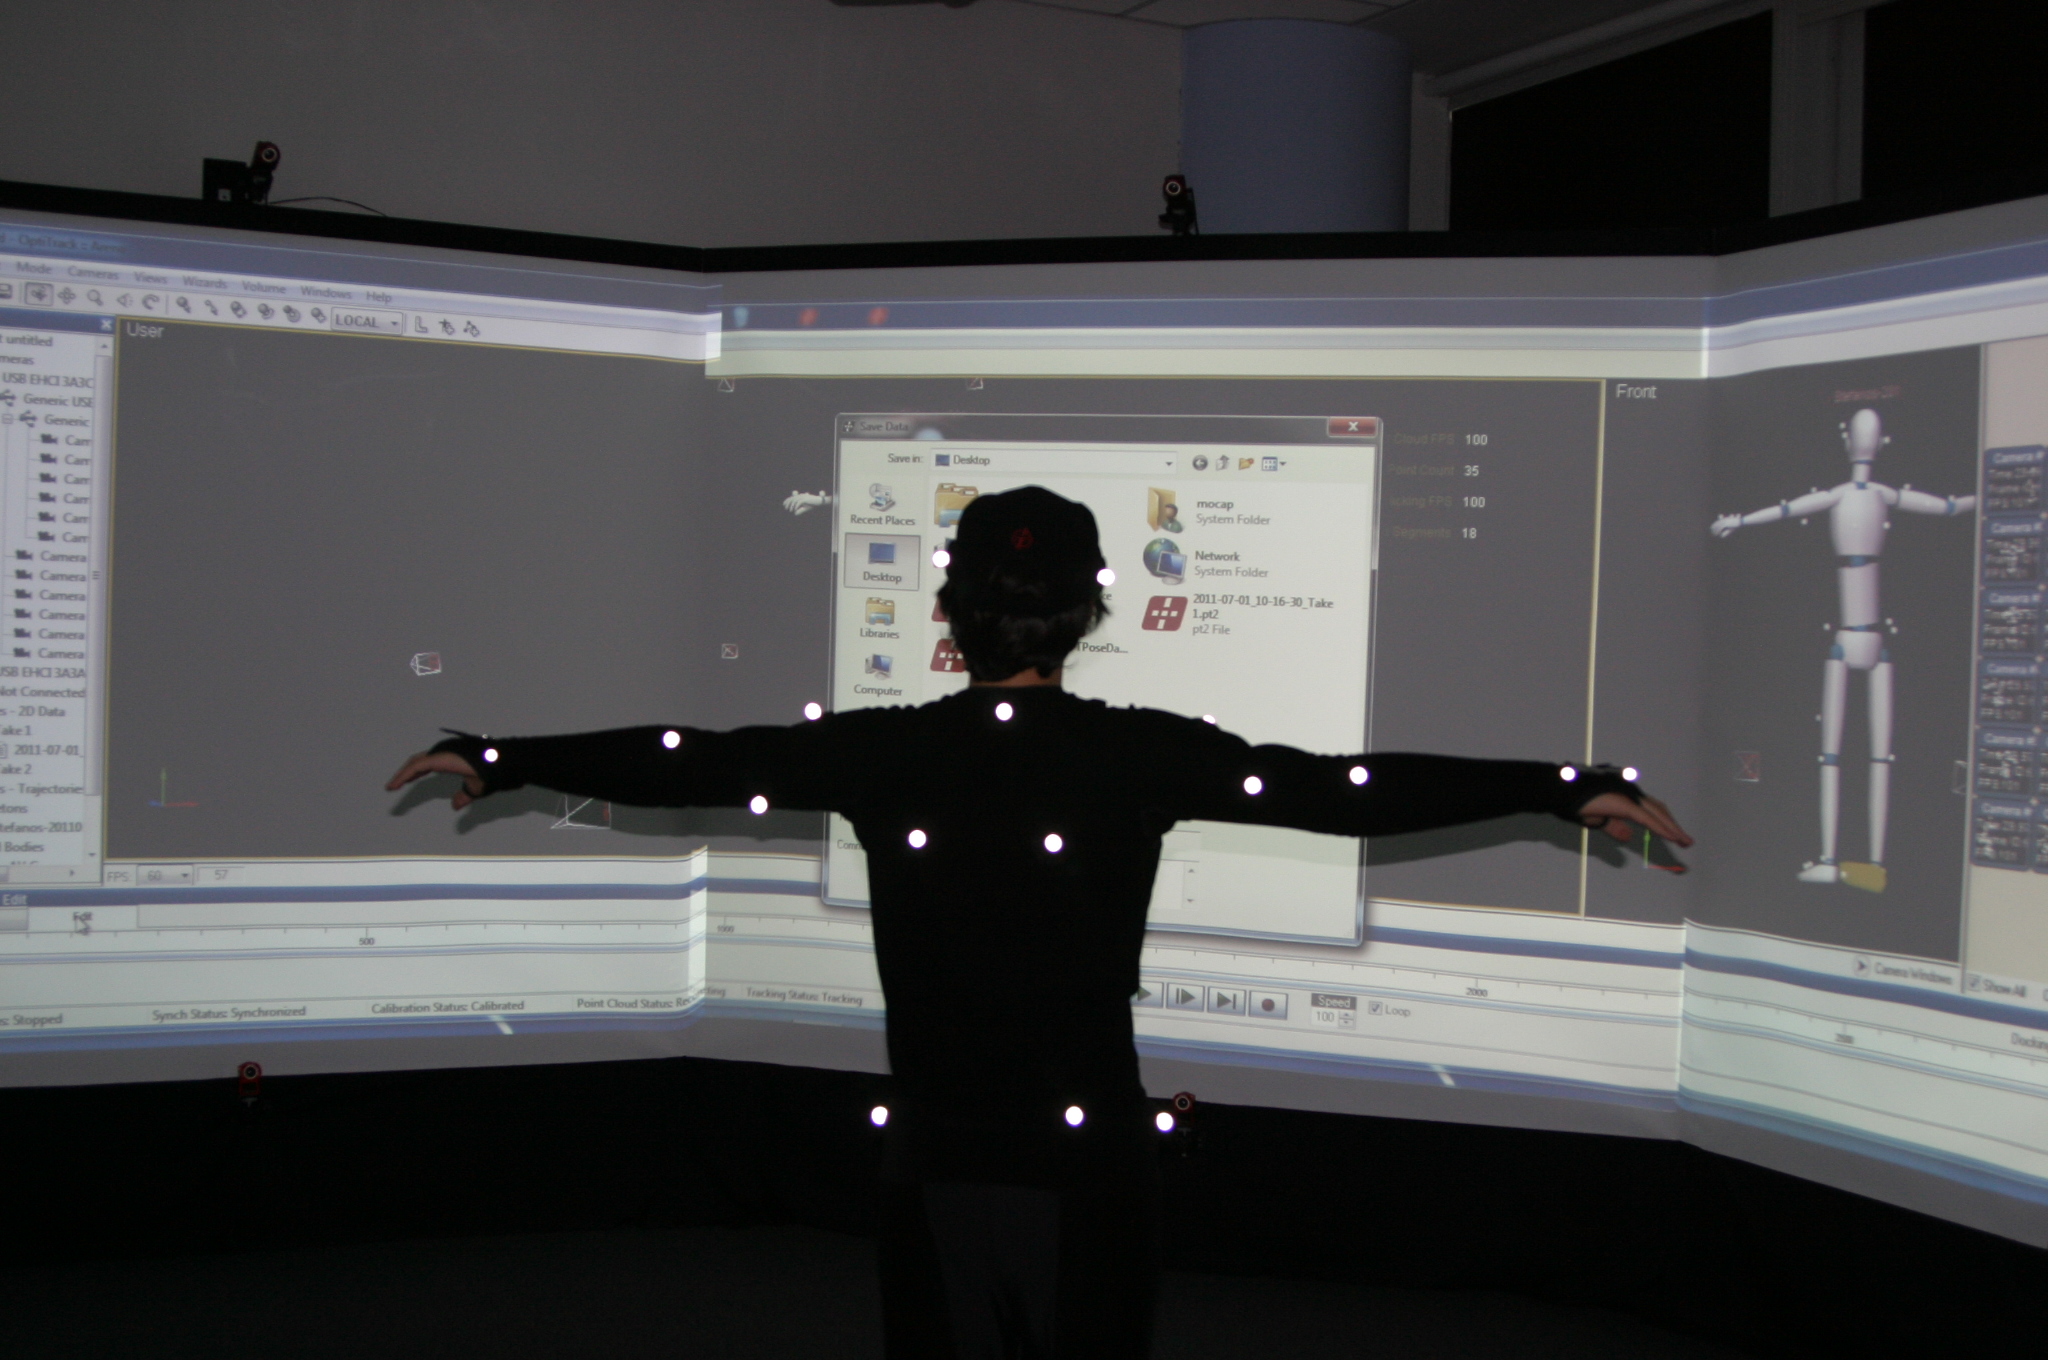 Σύστημα motion capture στο εργαστήριο γραφικών και εικονικής πραγματικότητας